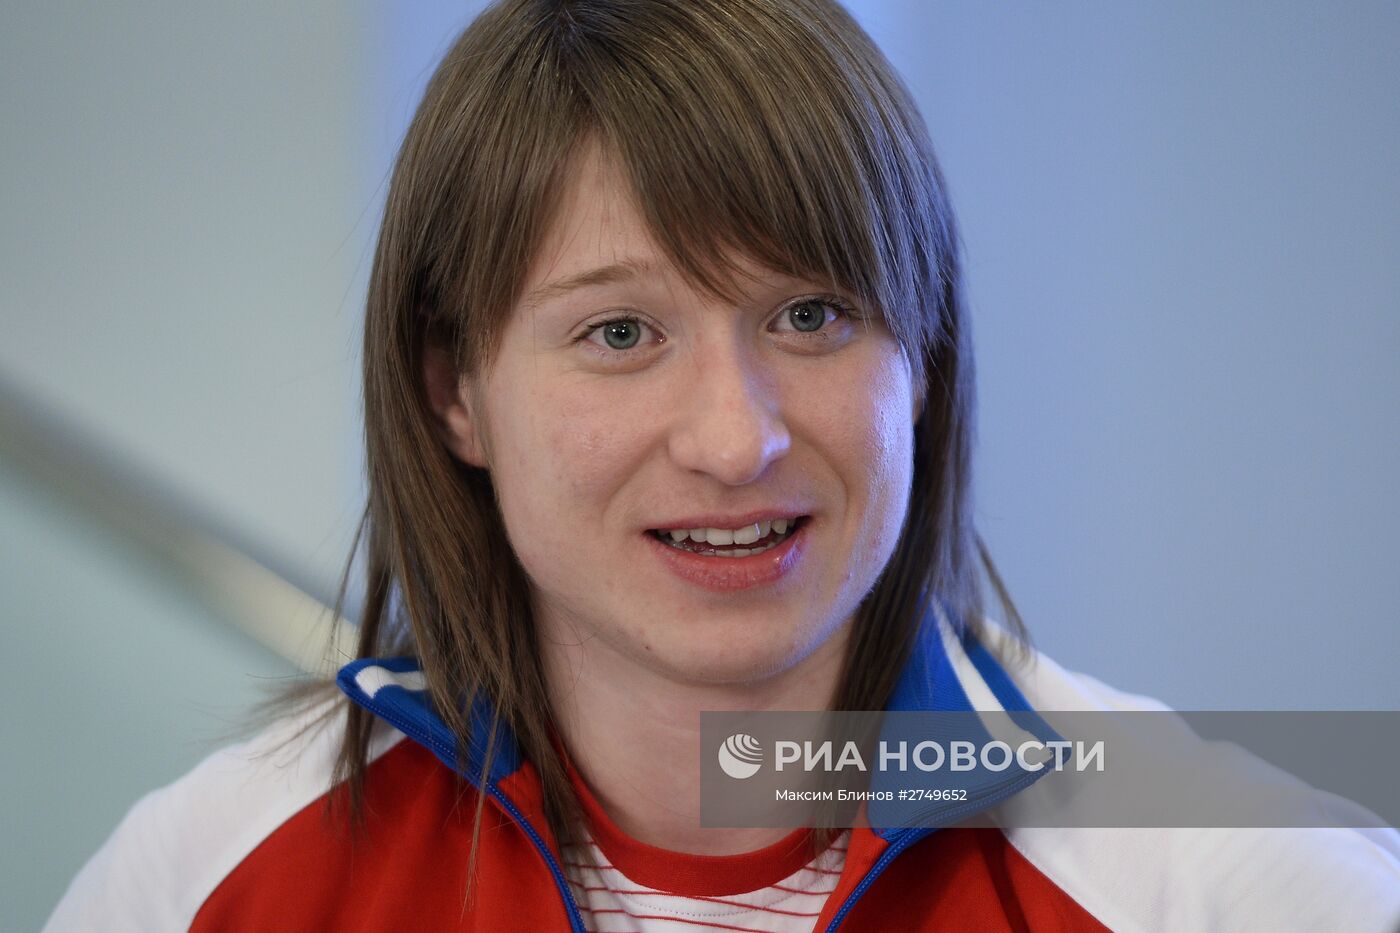 Пресс-конференция Федерации тяжелой атлетики России